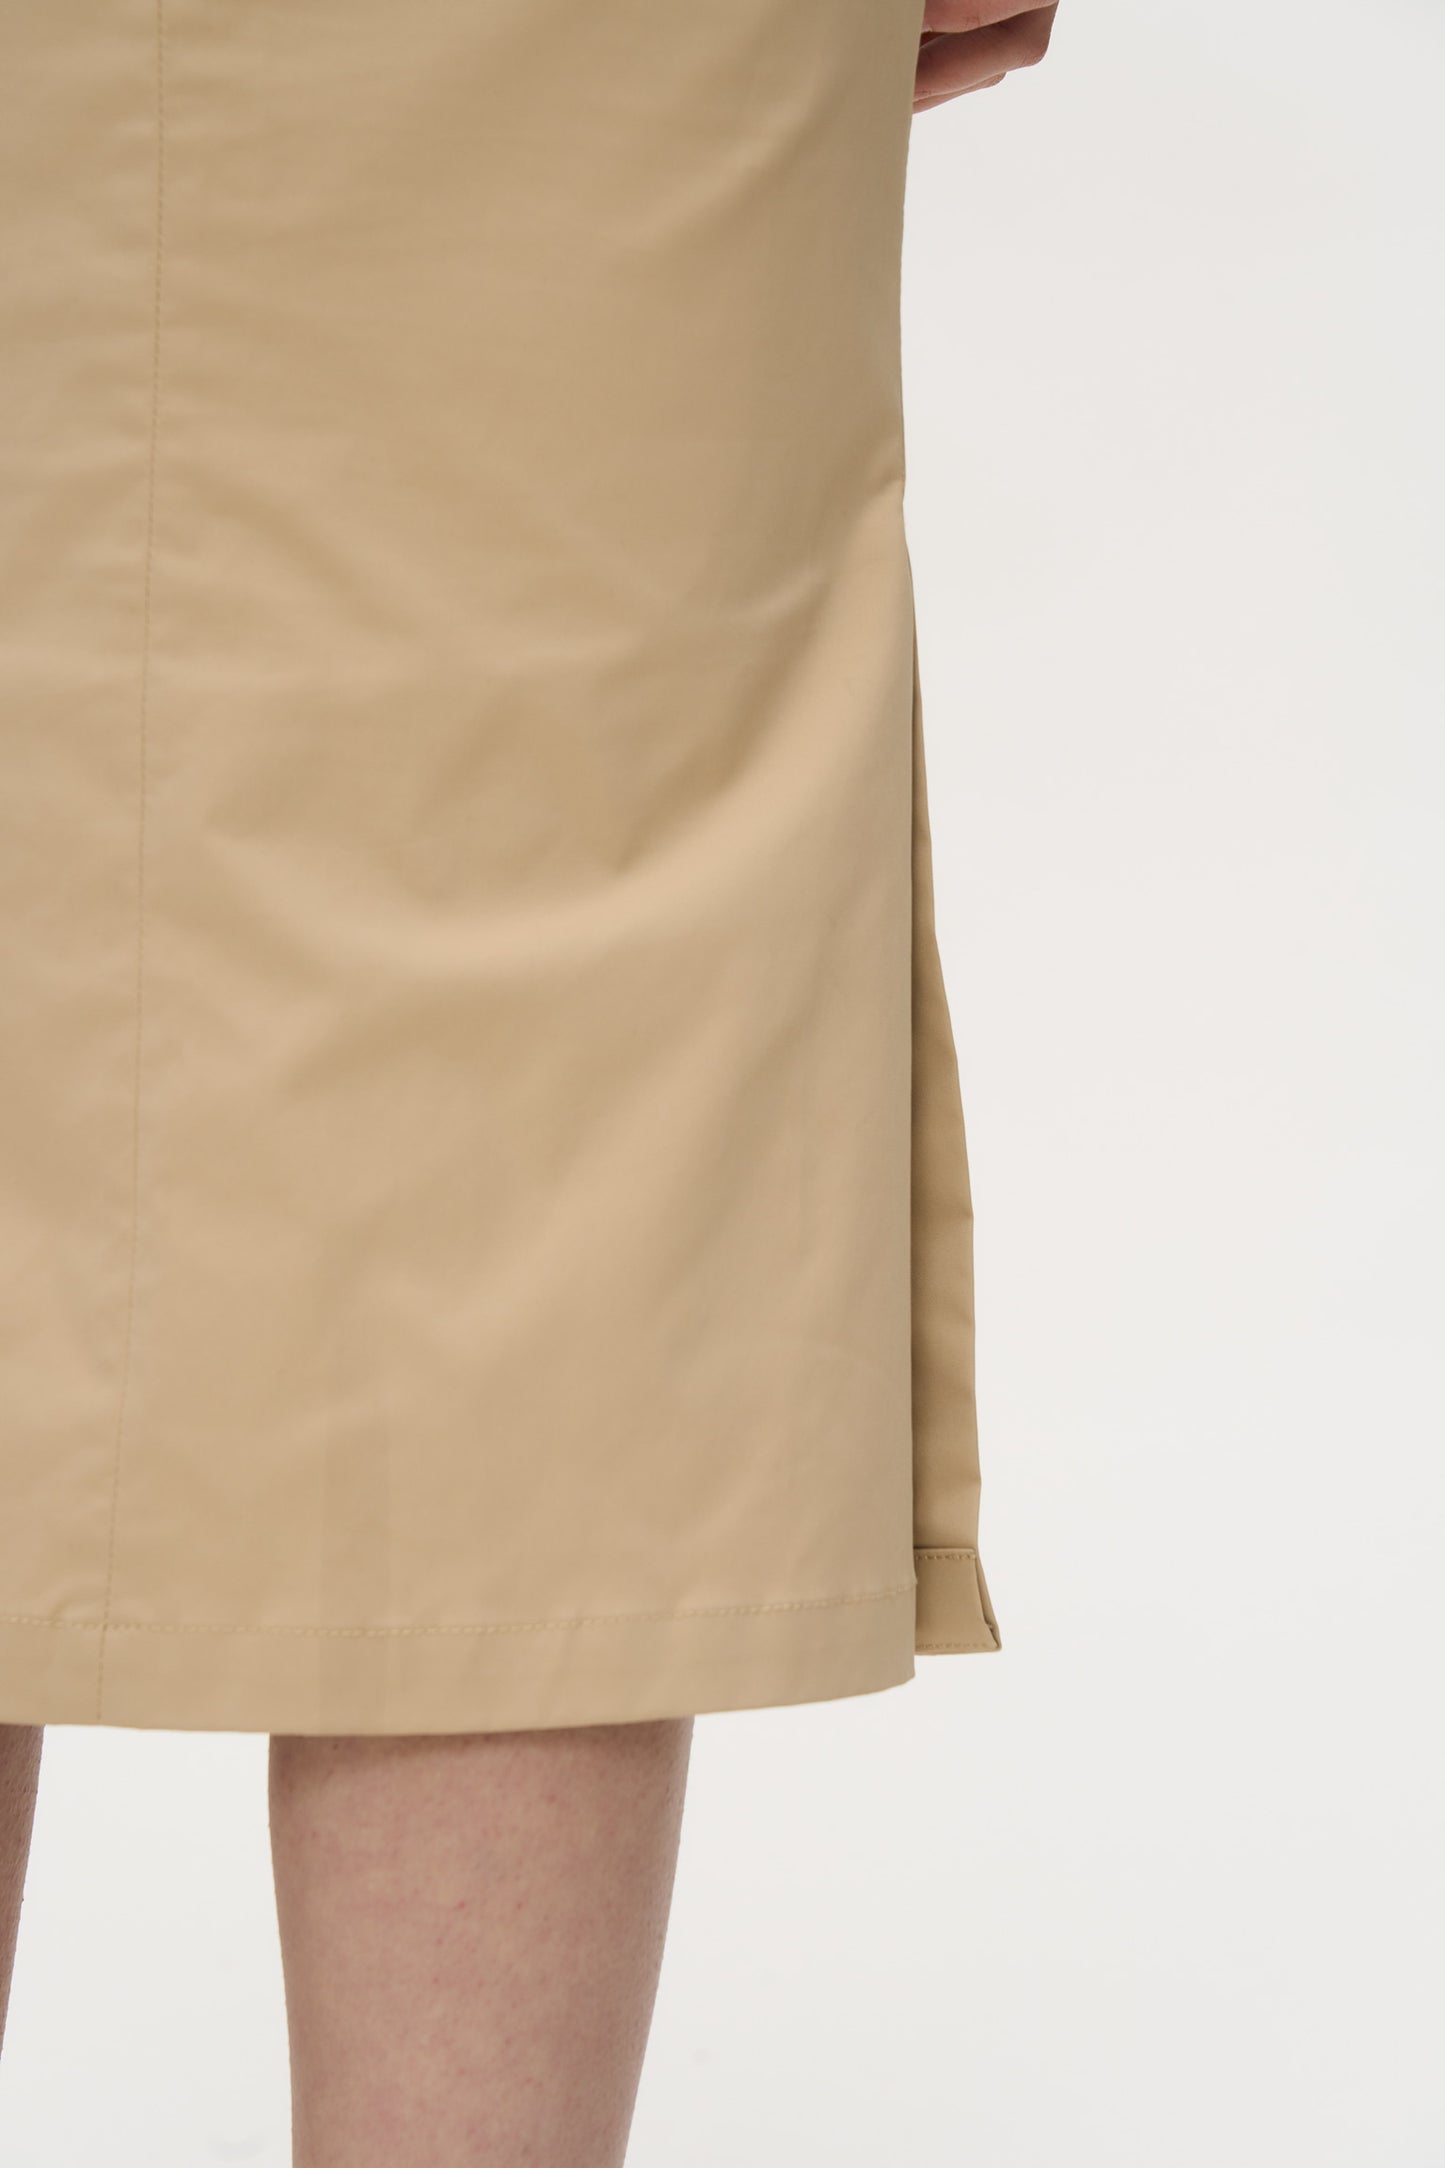 Kobi Double Slit Casual Skirt in Khaki